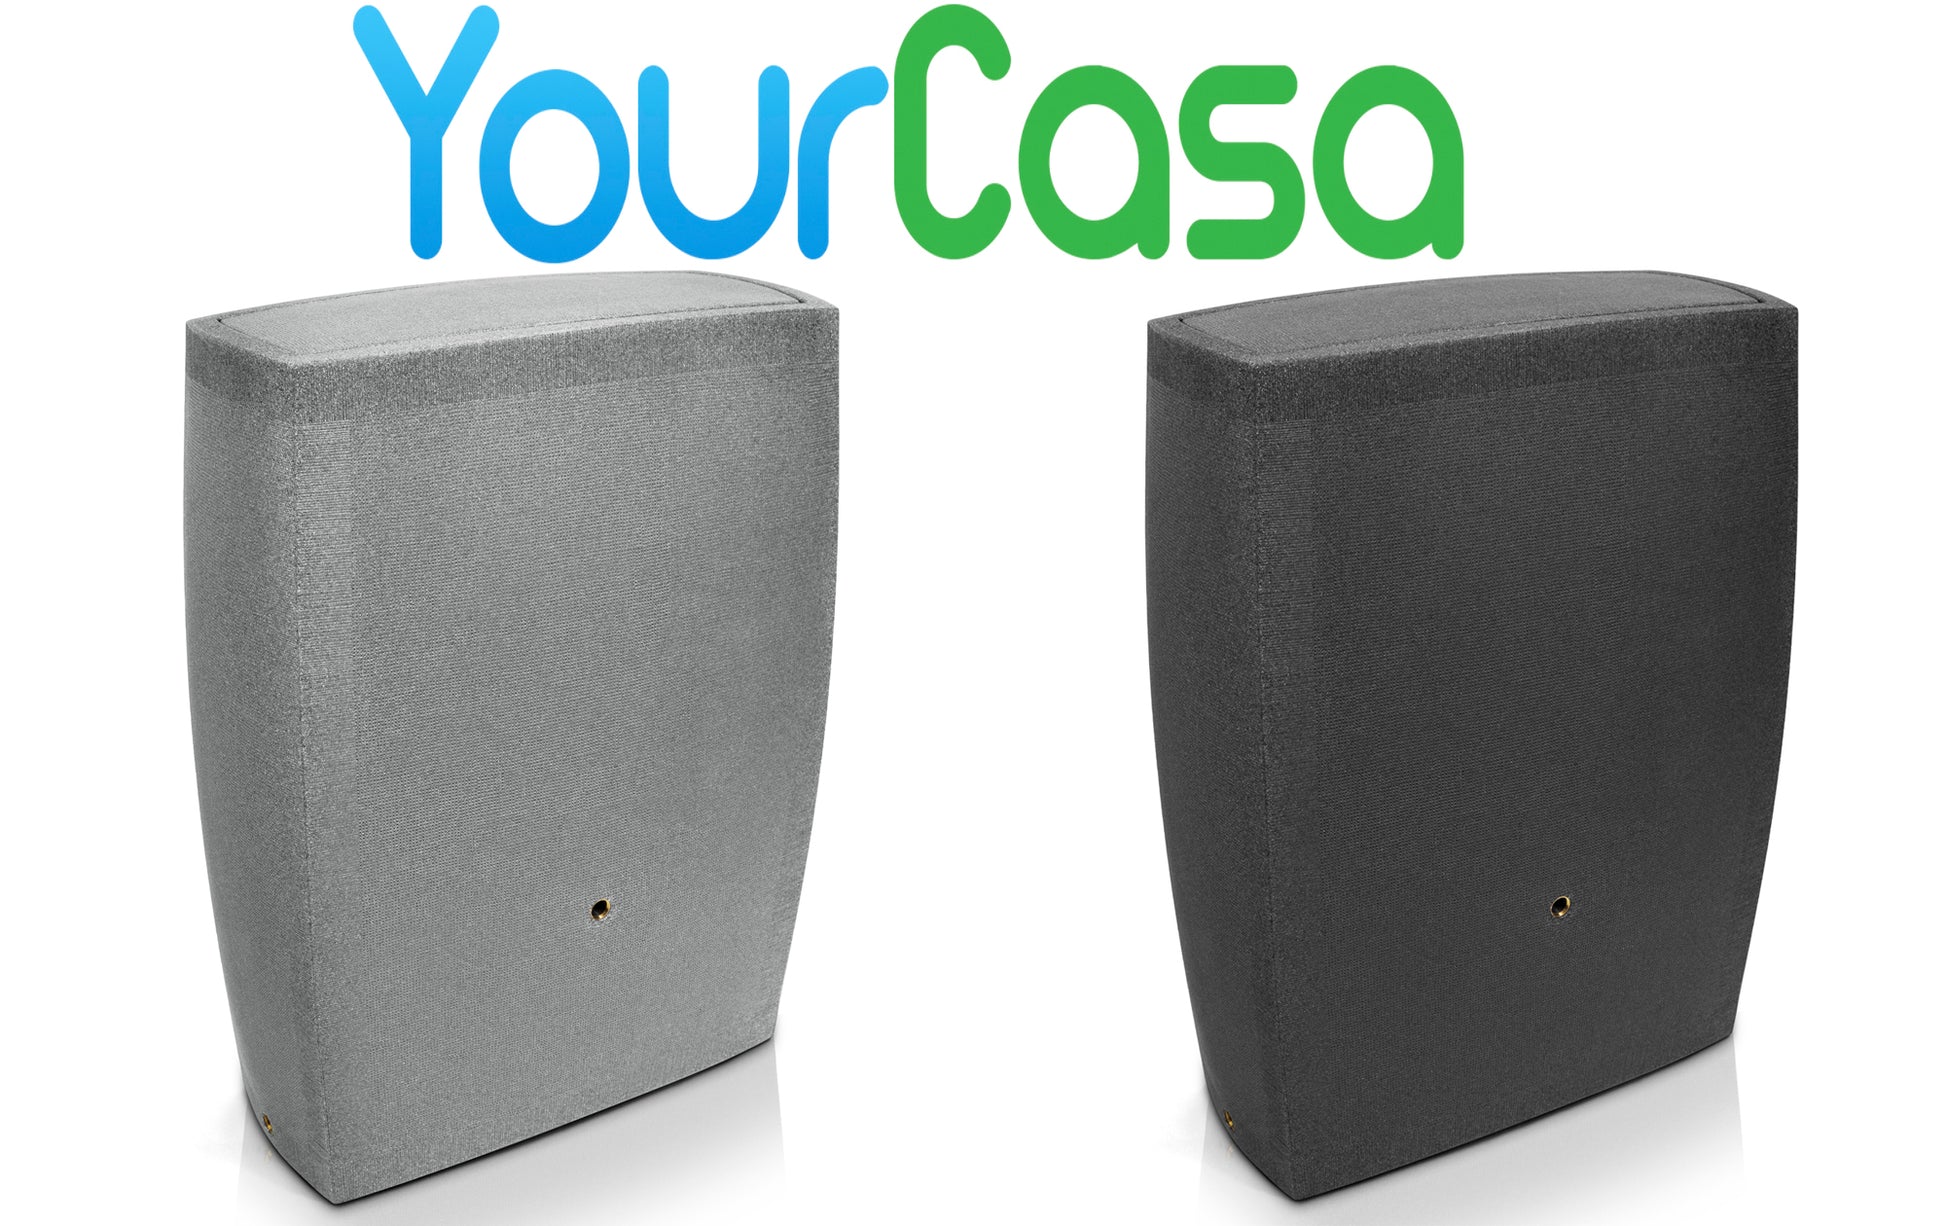 Zwei moderne, frostsichere Outdoor-Lautsprecher von yourcasa-de in kontrastierenden Farben.